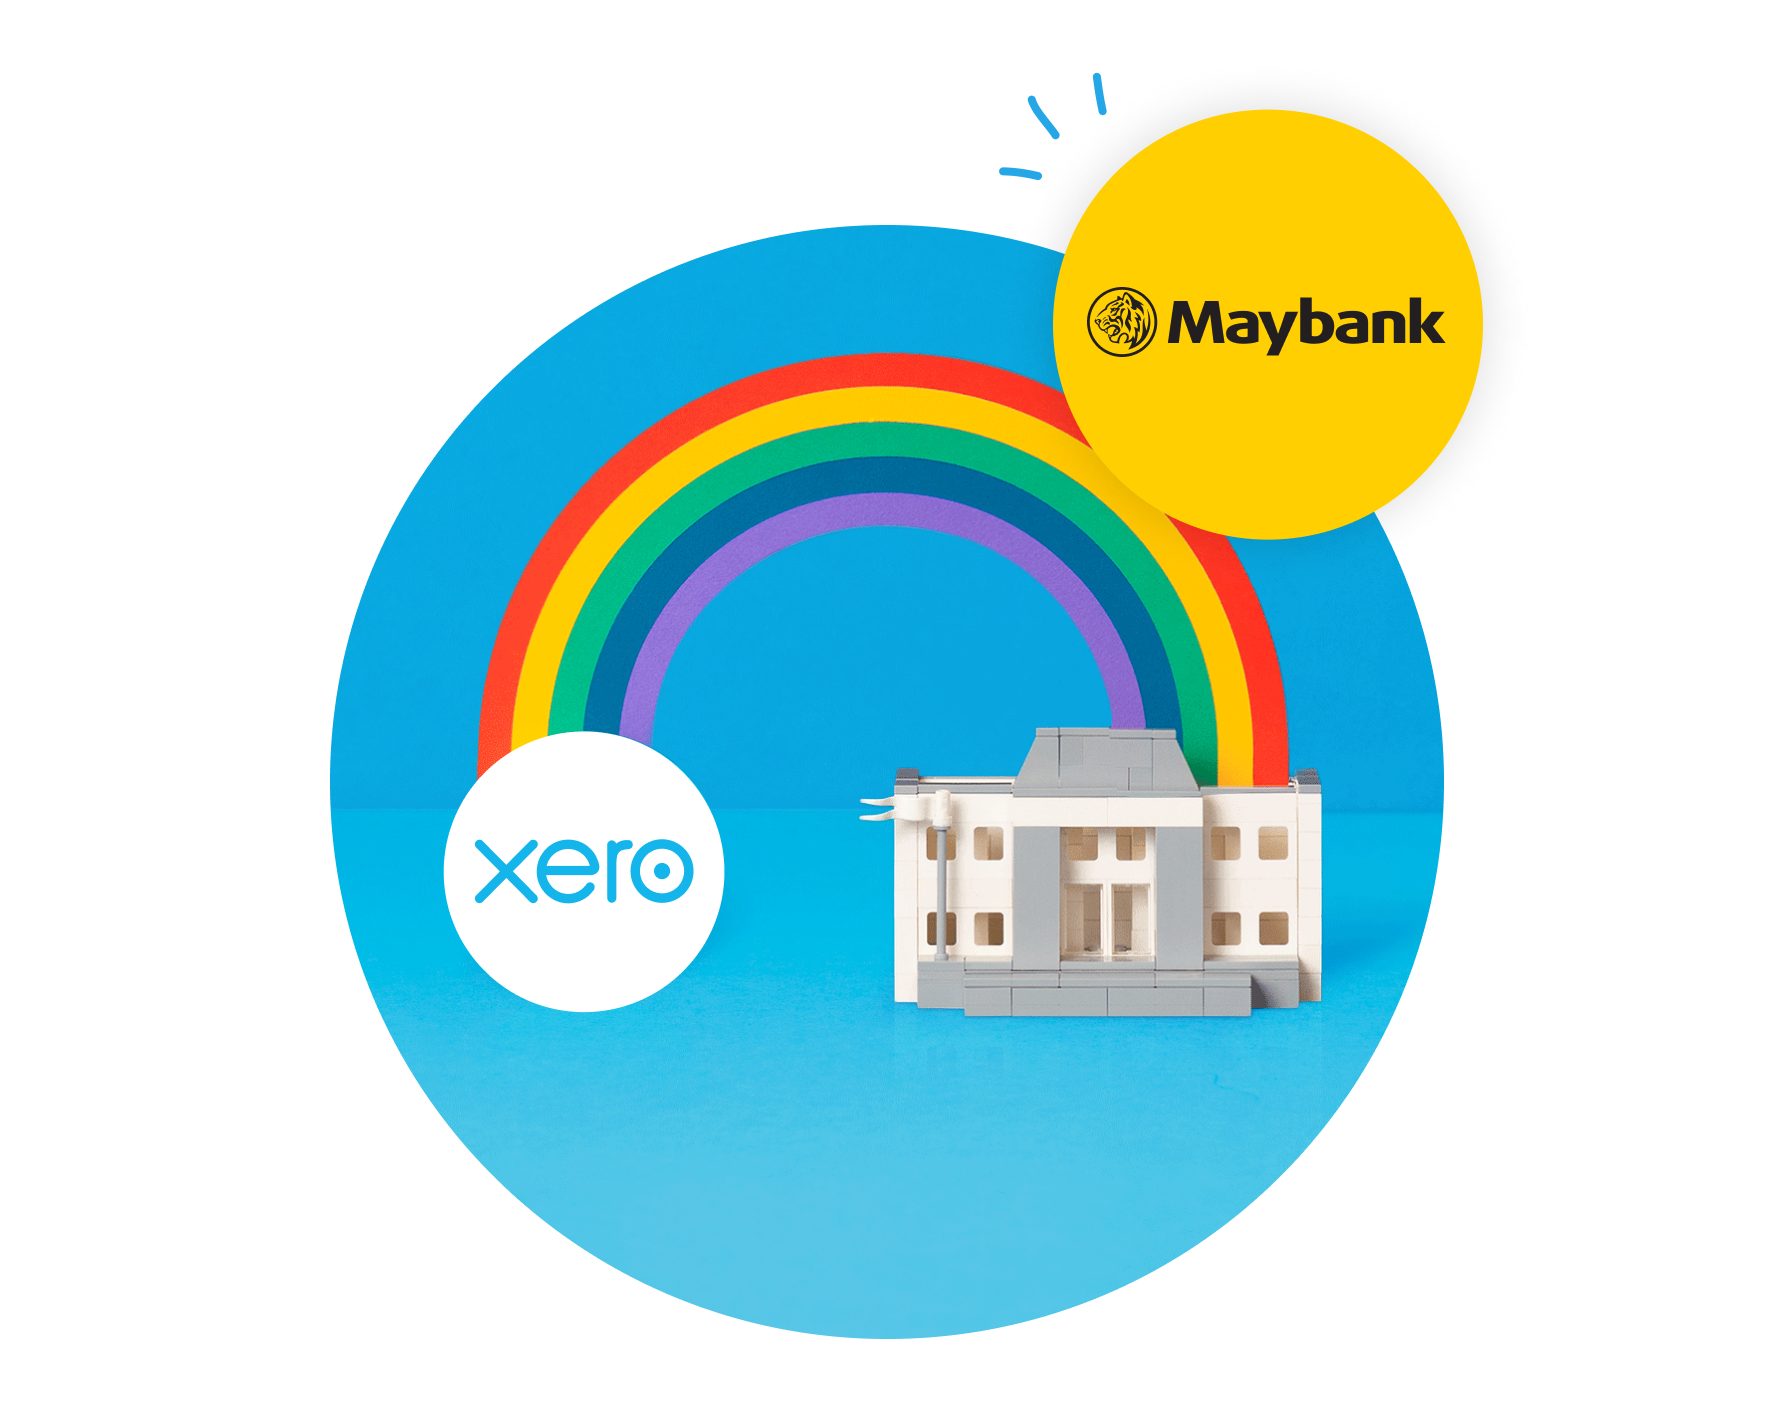 Xero logo and Maybank logo